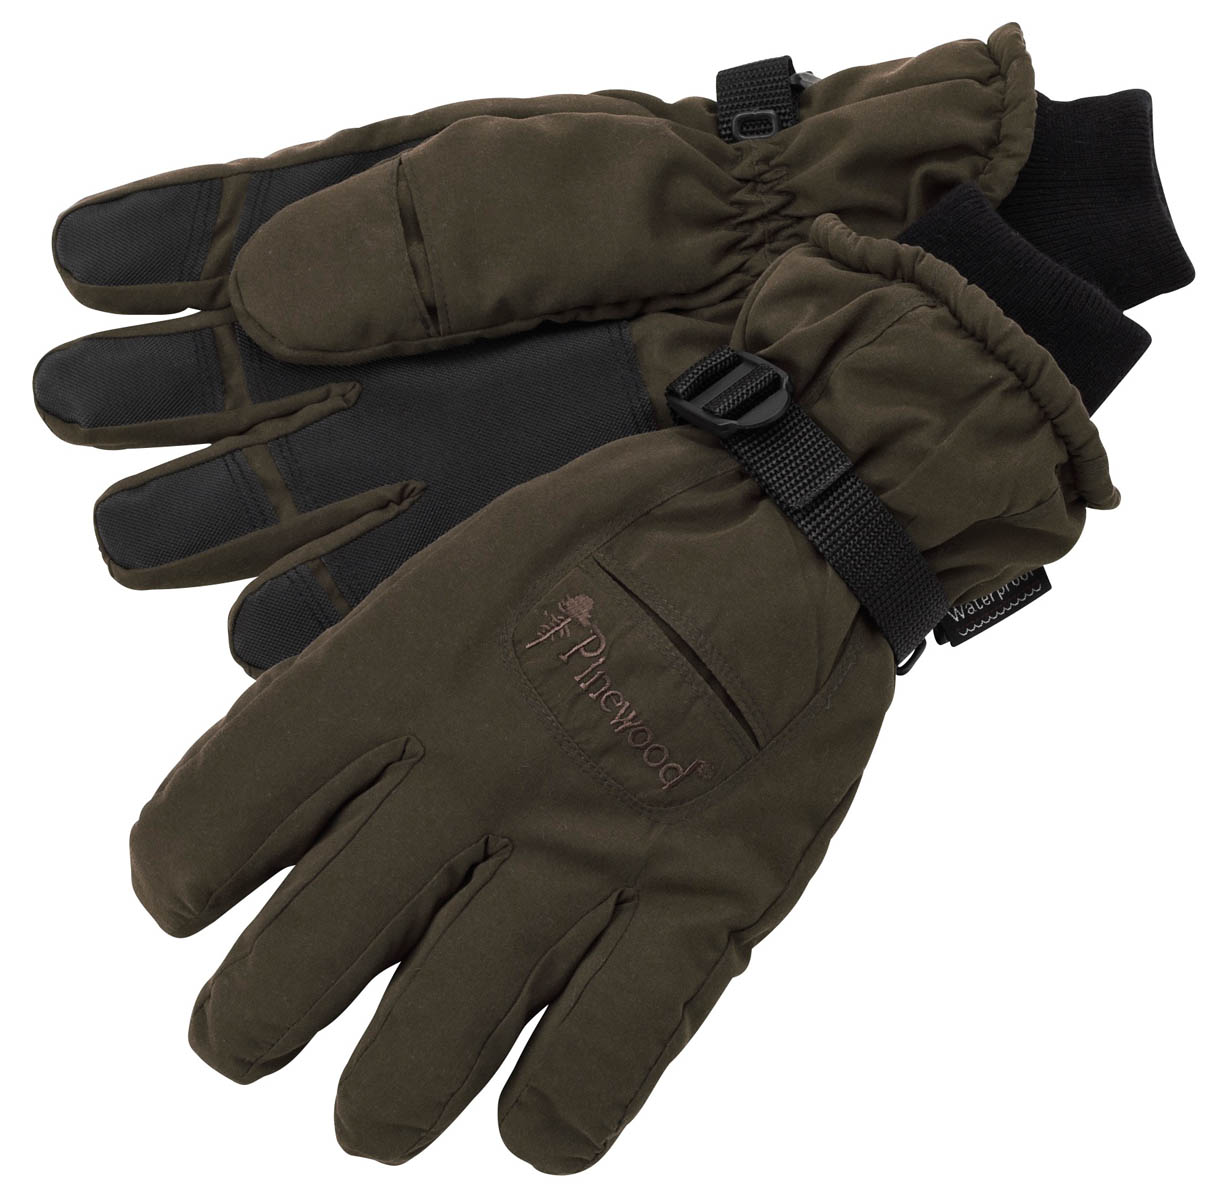 Pinewood Jagdhandschuhe Handschuh mit Membran  Handschuh mit Membran von Pinewood, wasserdichte Membran und Schießfingeröffnung